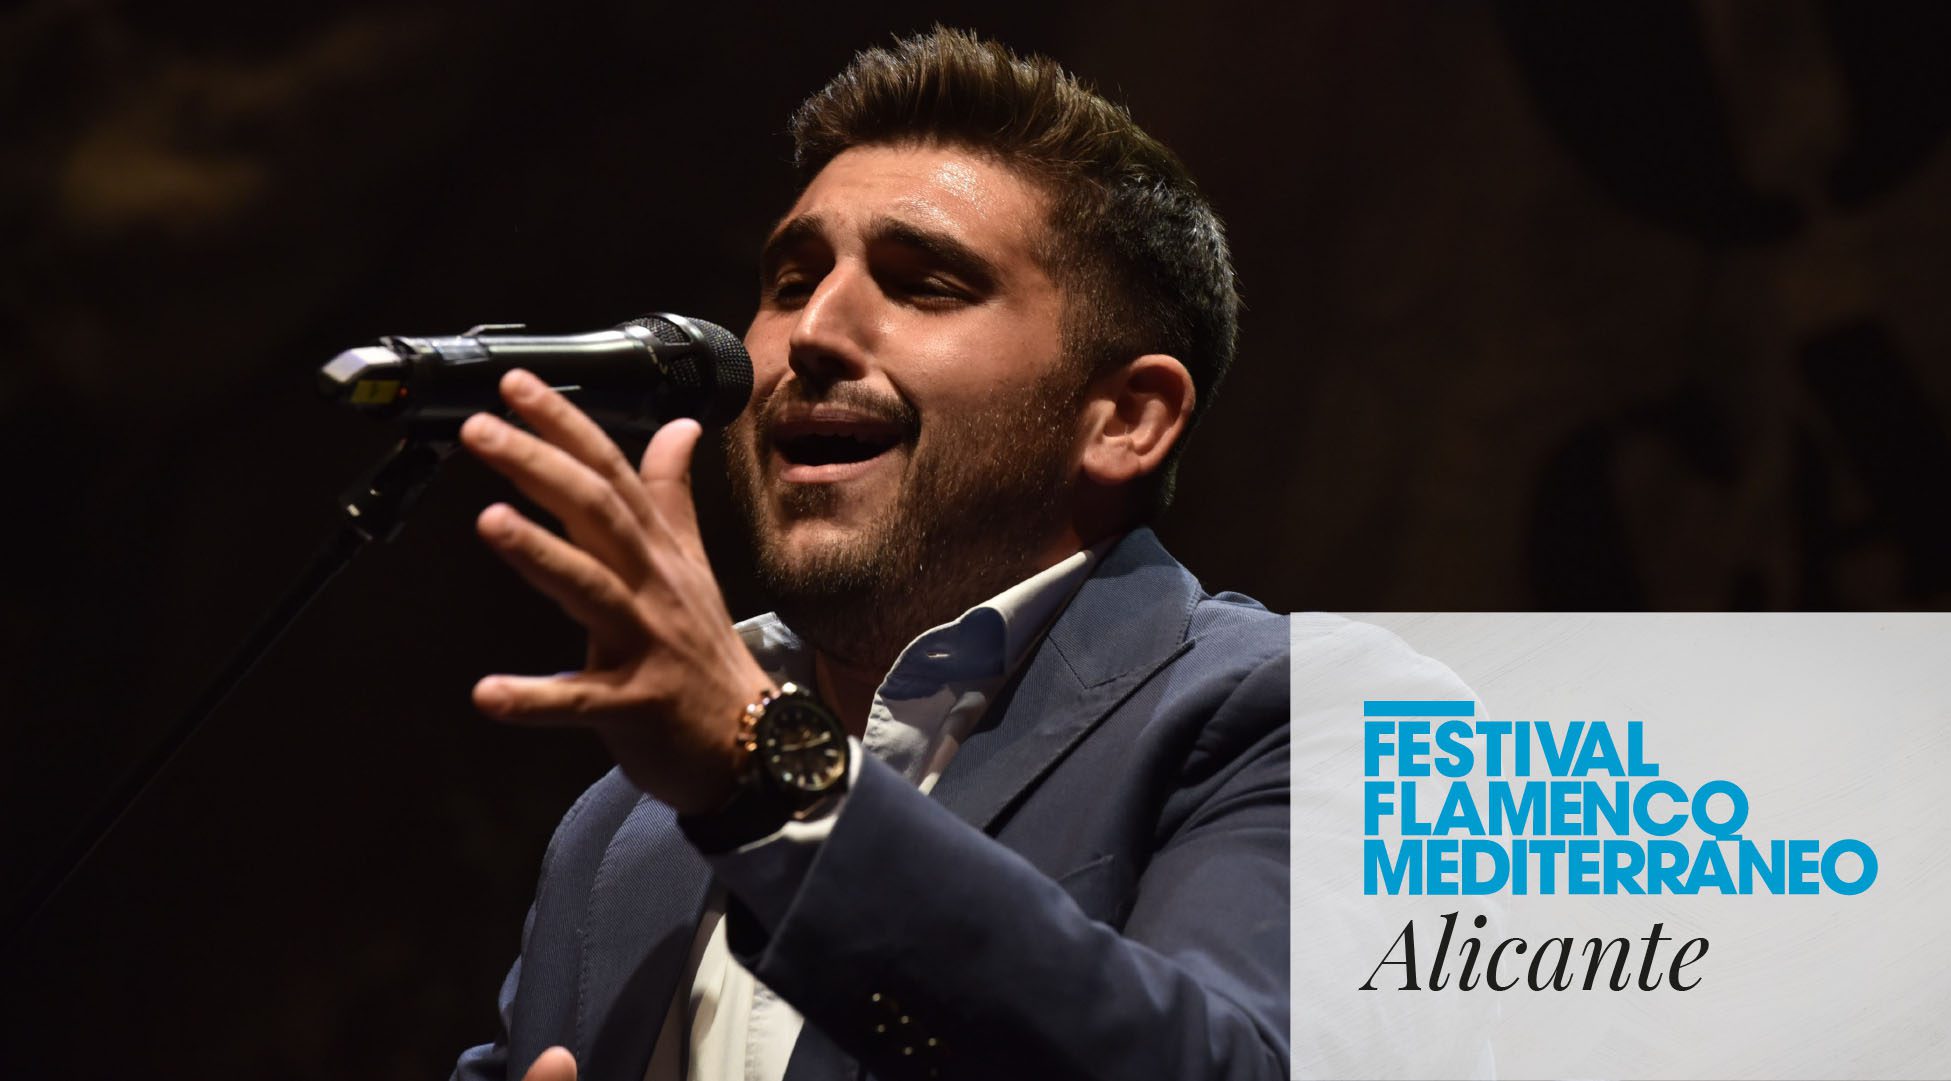 Festival de Flamenco Mediterráneo - Jornada de apertura Alicante - Fundación Mediterráneo